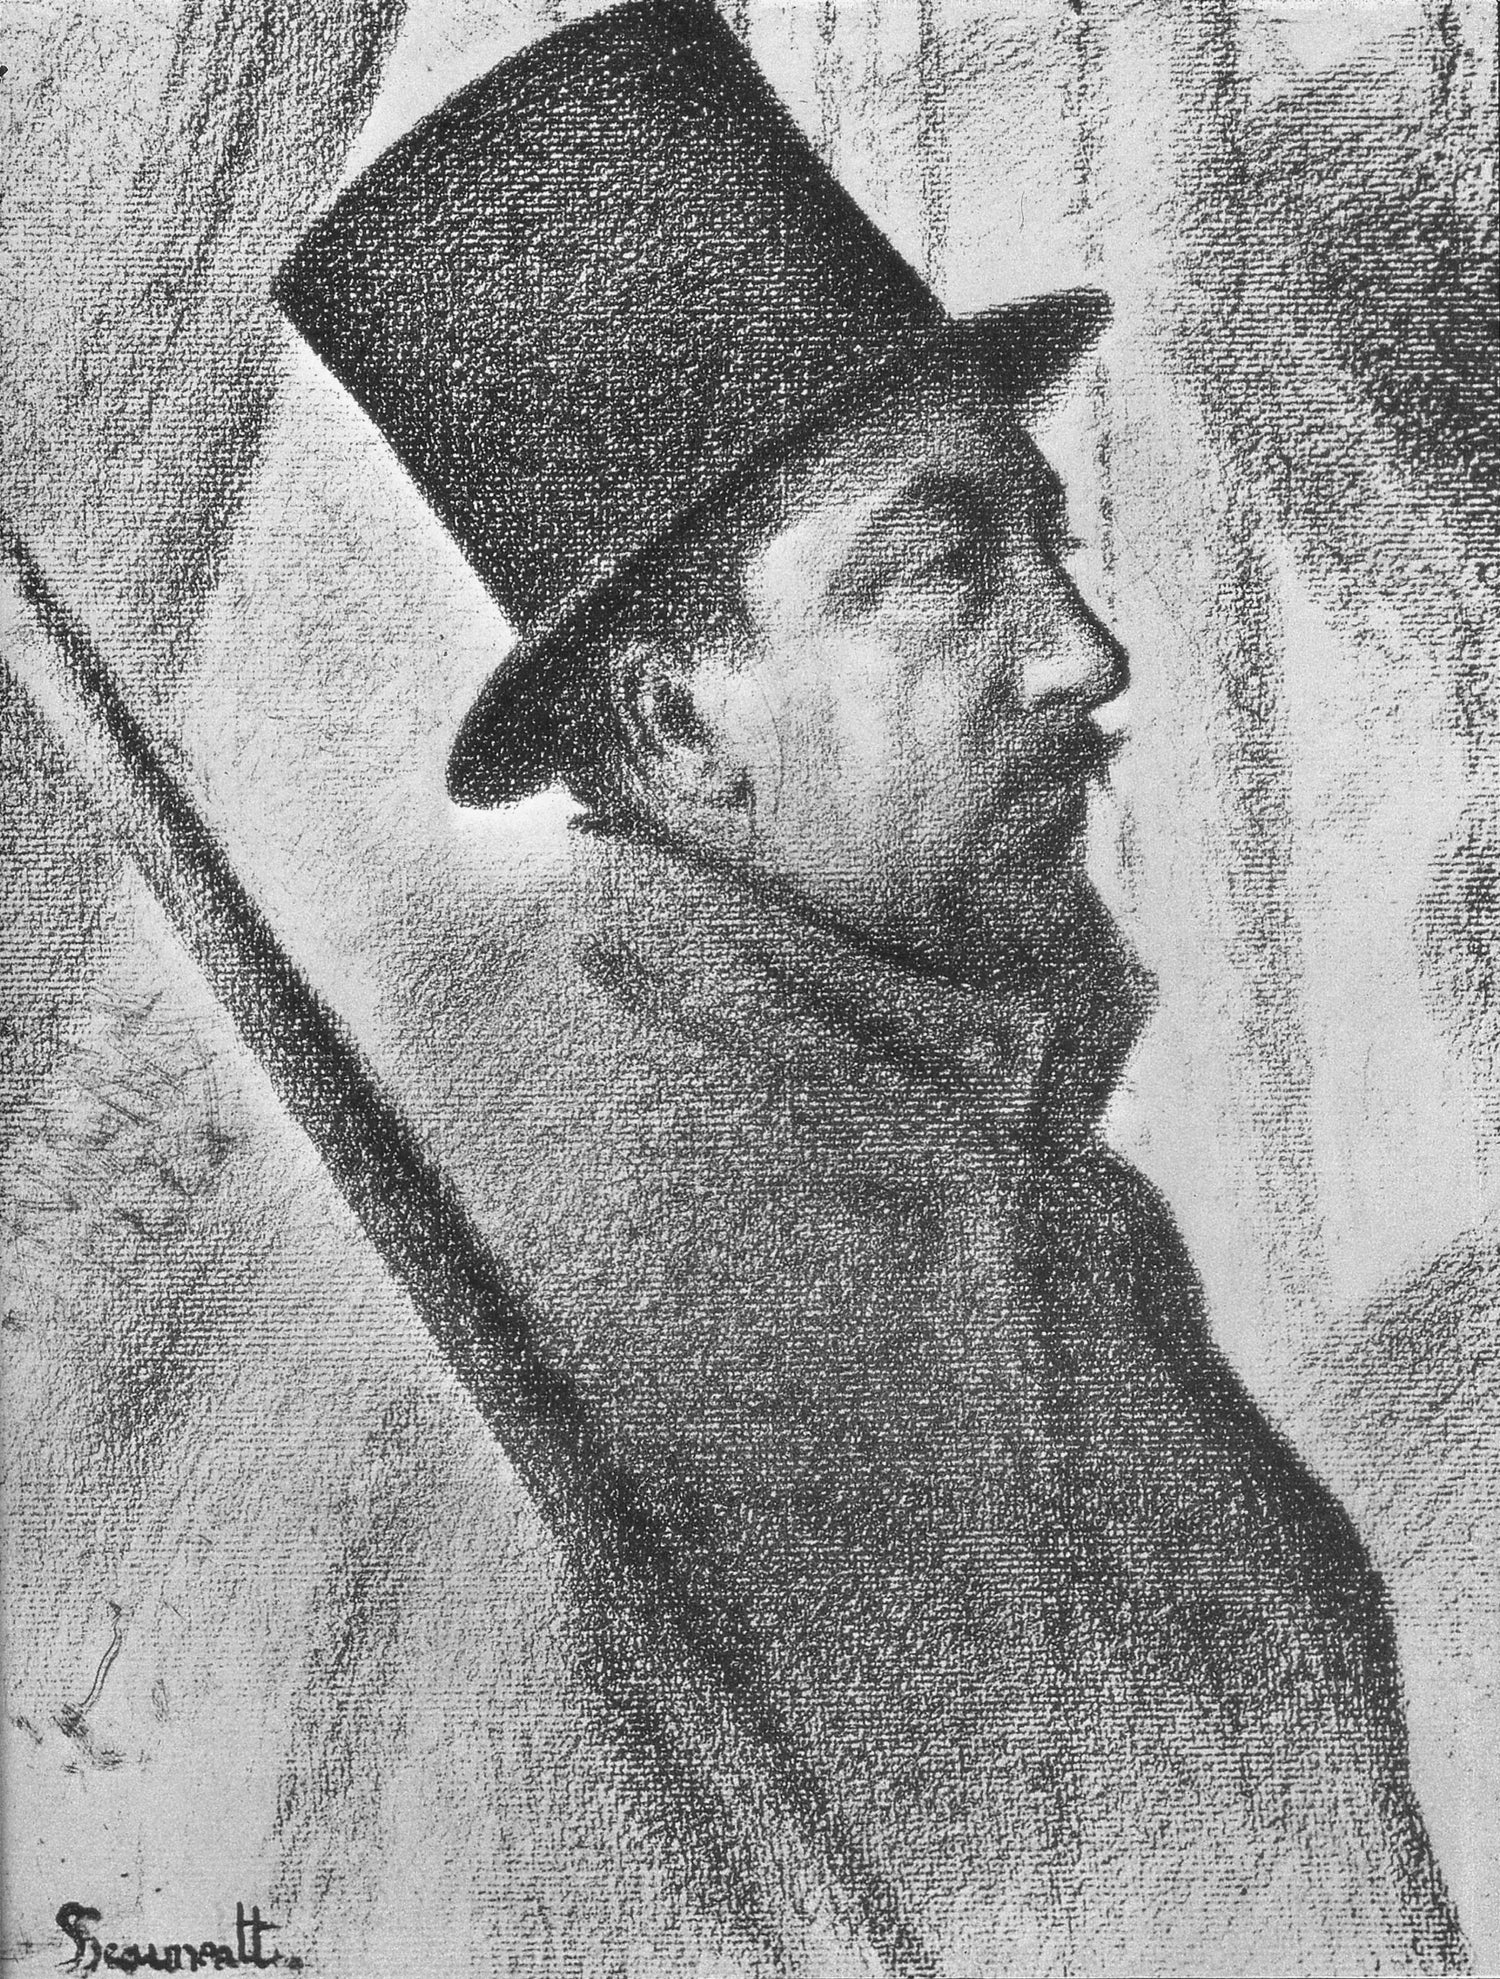 Portrait of Paul Signac in conté crayon by Georges Seurat, c. 1890